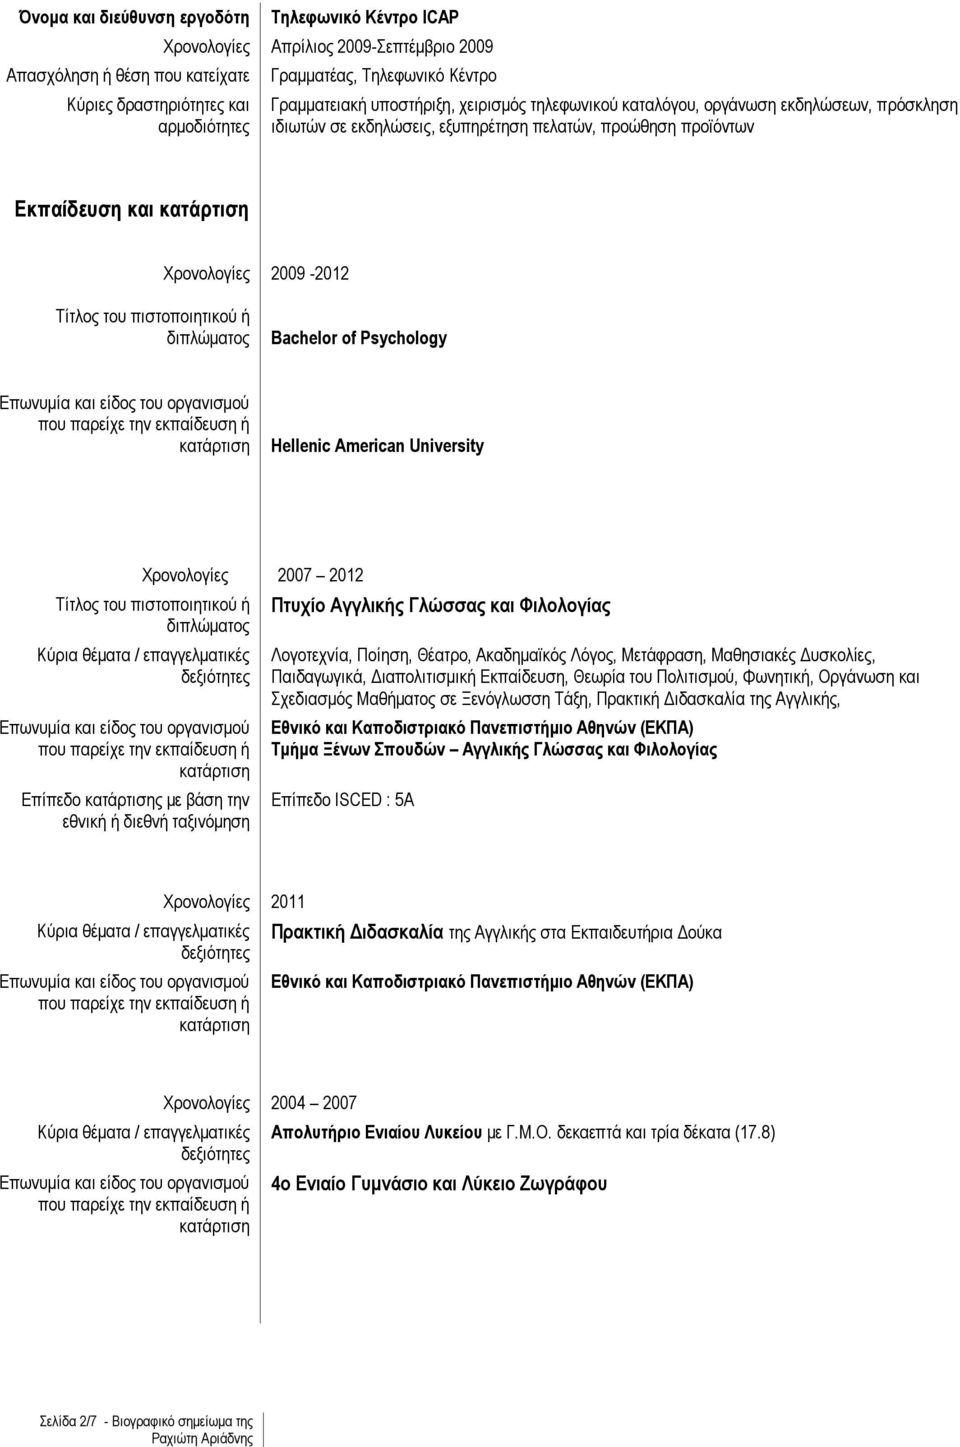 πιστοποιητικού ή διπλώματος Επίπεδο ς με βάση την εθνική ή διεθνή ταξινόμηση 2007 2012 Πτυχίο Αγγλικής Γλώσσας και Φιλολογίας Λογοτεχνία, Ποίηση, Θέατρο, Ακαδημαϊκός Λόγος, Μετάφραση, Μαθησιακές